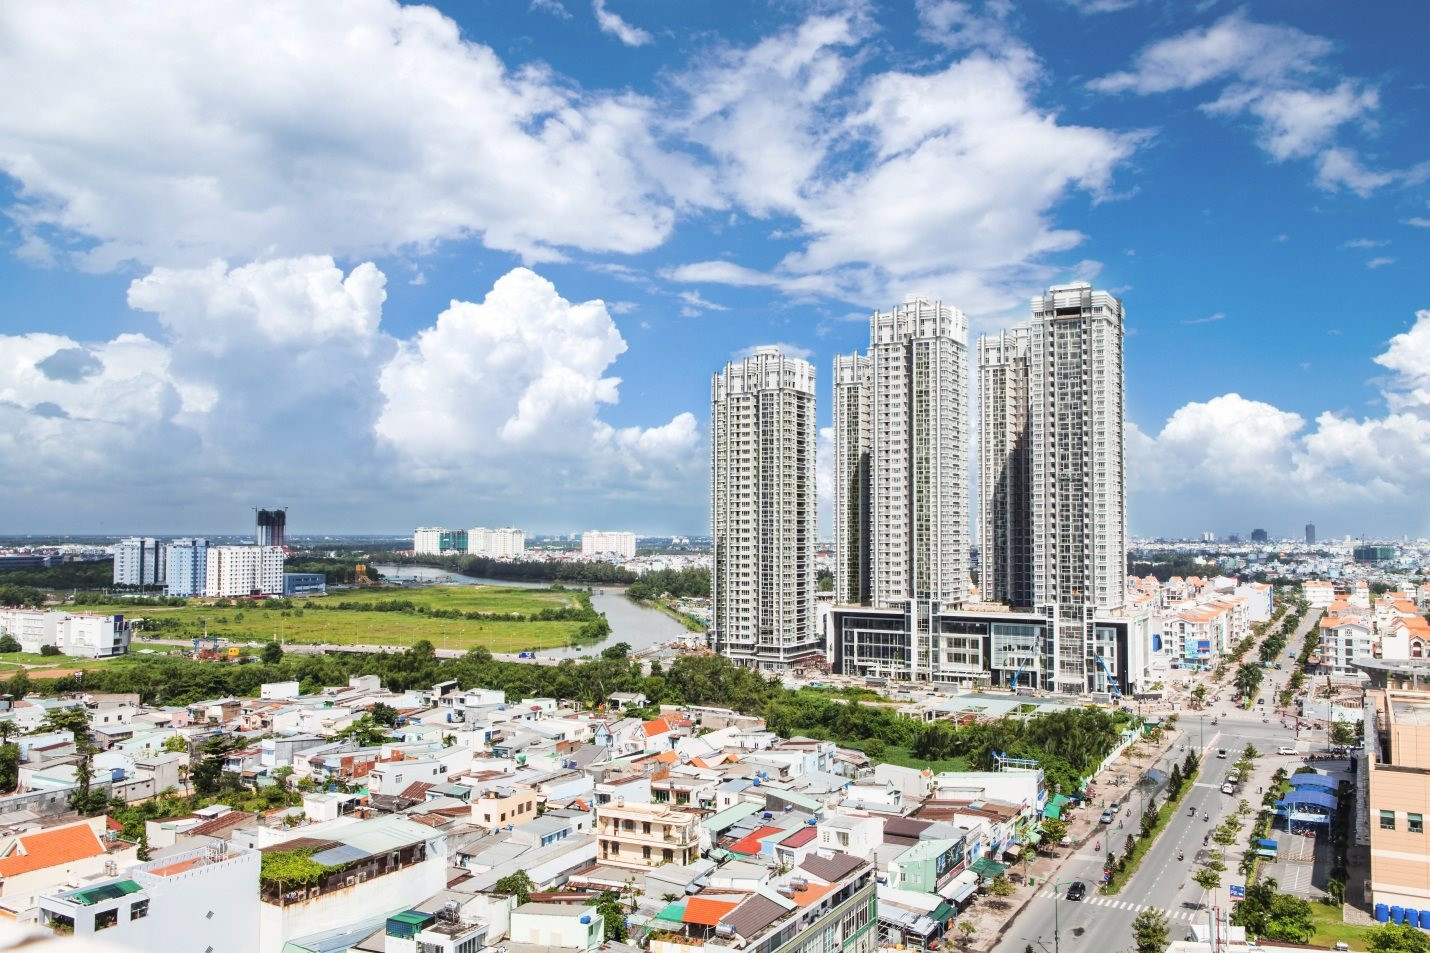 Mức tăng giá nhà/thu nhập của Việt Nam đã vượt Singapore, người Việt ngày càng khó mua nhà - Ảnh 1.